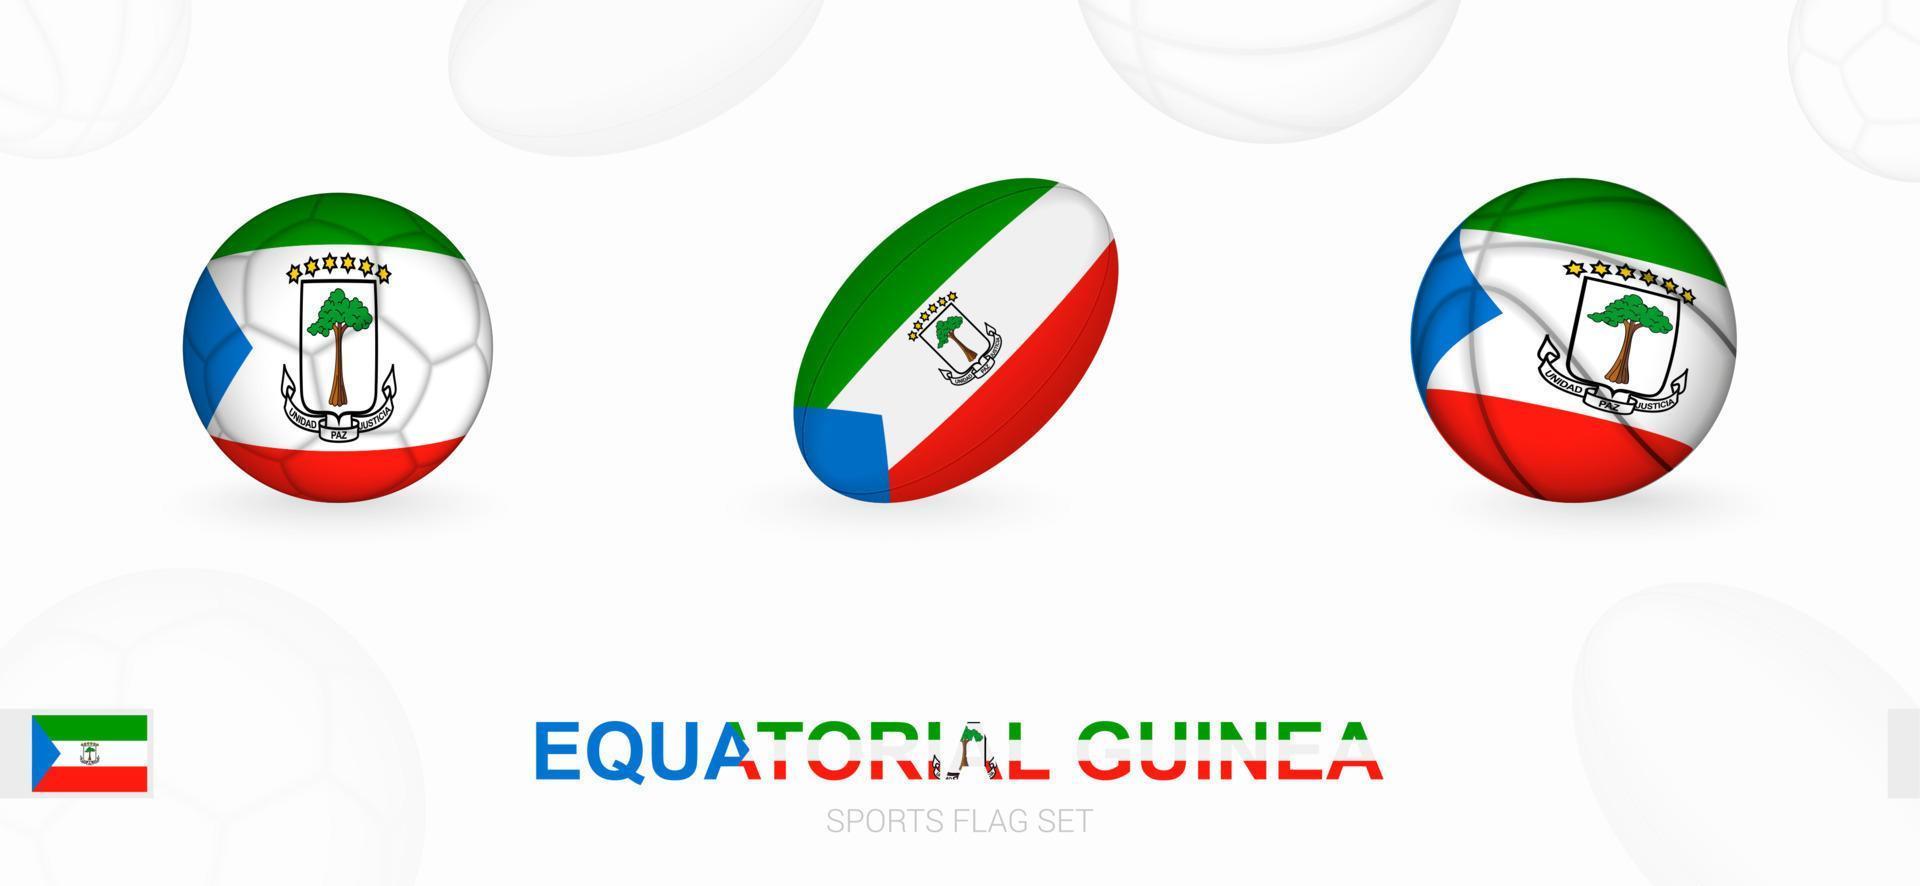 des sports Icônes pour football, le rugby et basketball avec le drapeau de équatorial Guinée. vecteur